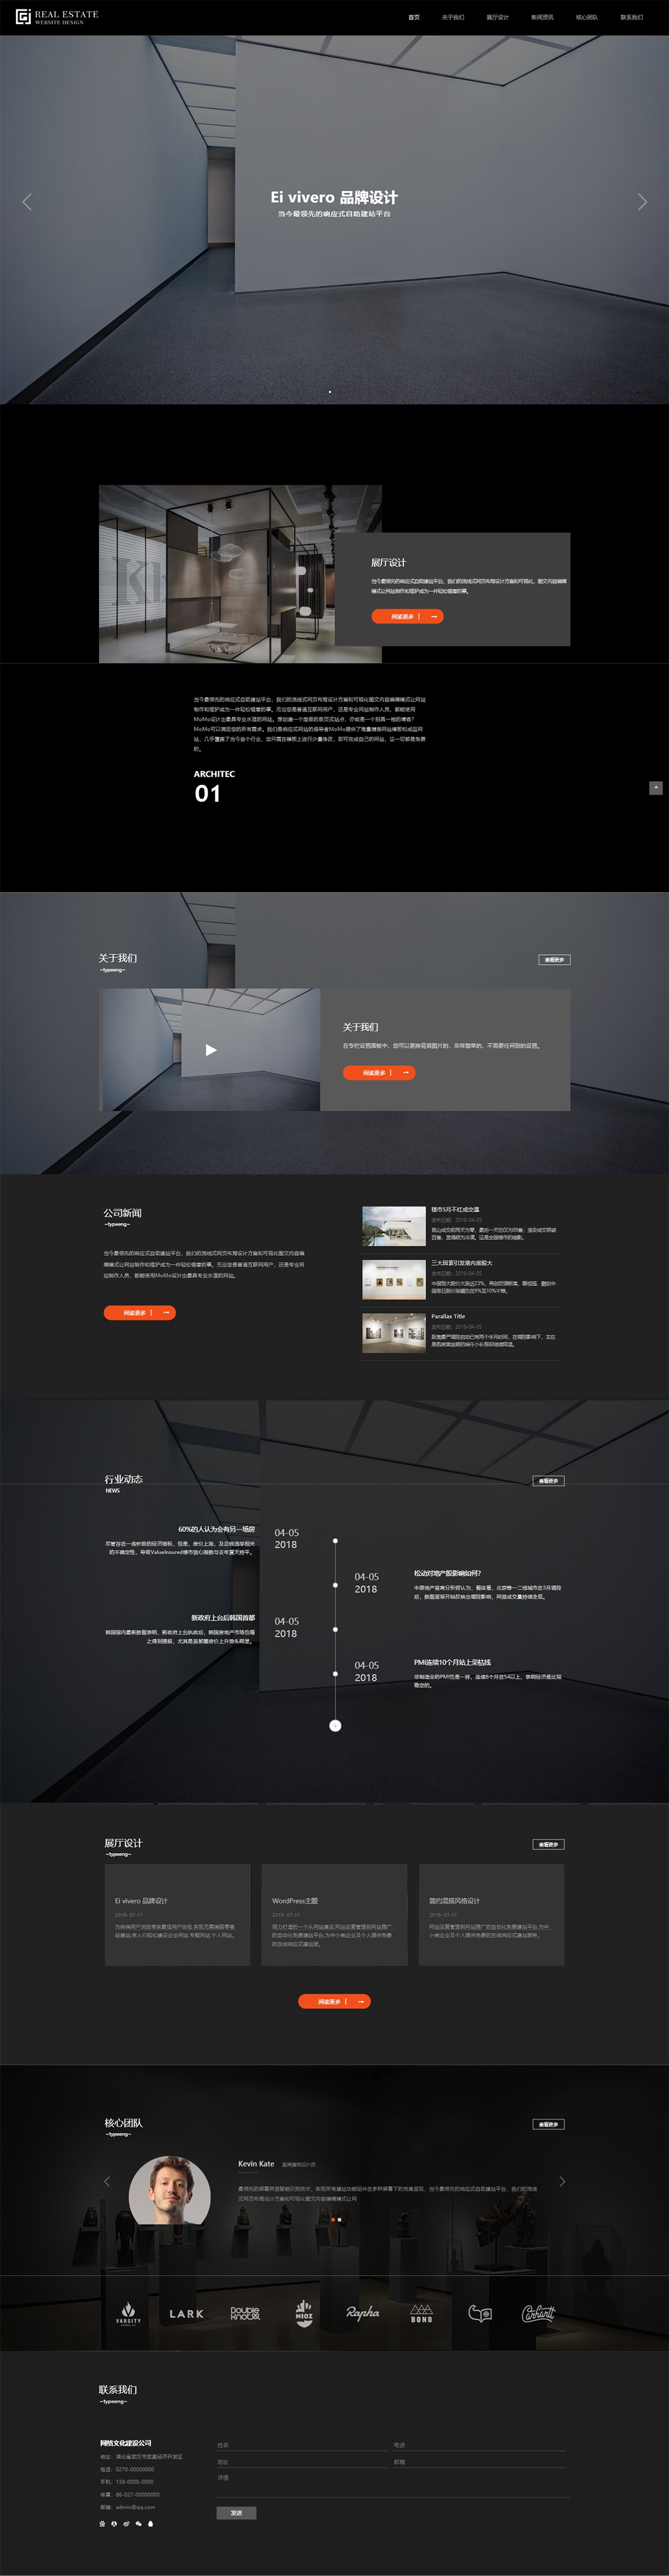 黑色高端建筑空间装修设计类响应式网站模板